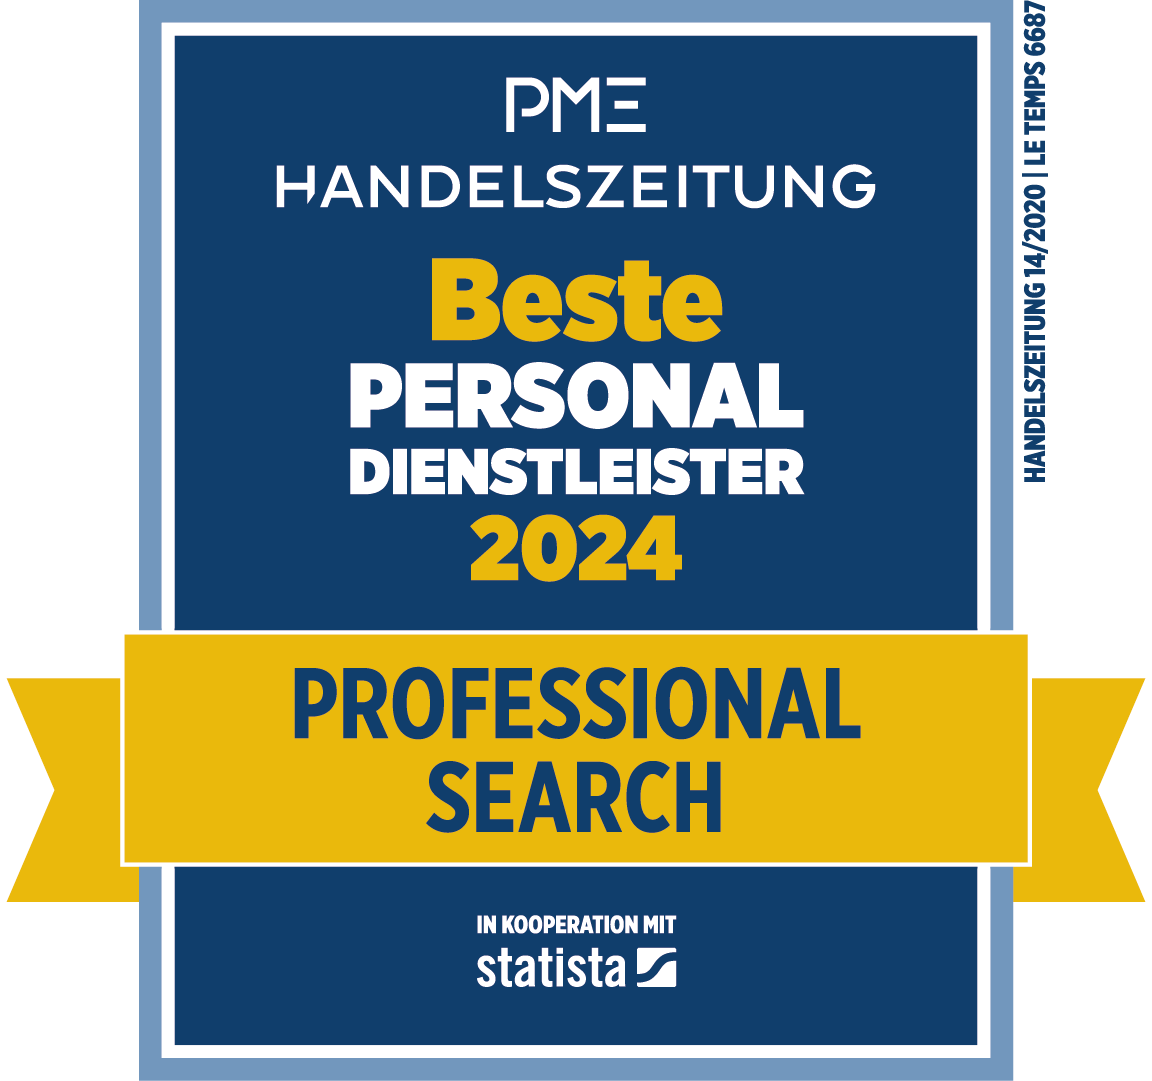 Beste Personaldienstleister 2024 - Professional Search